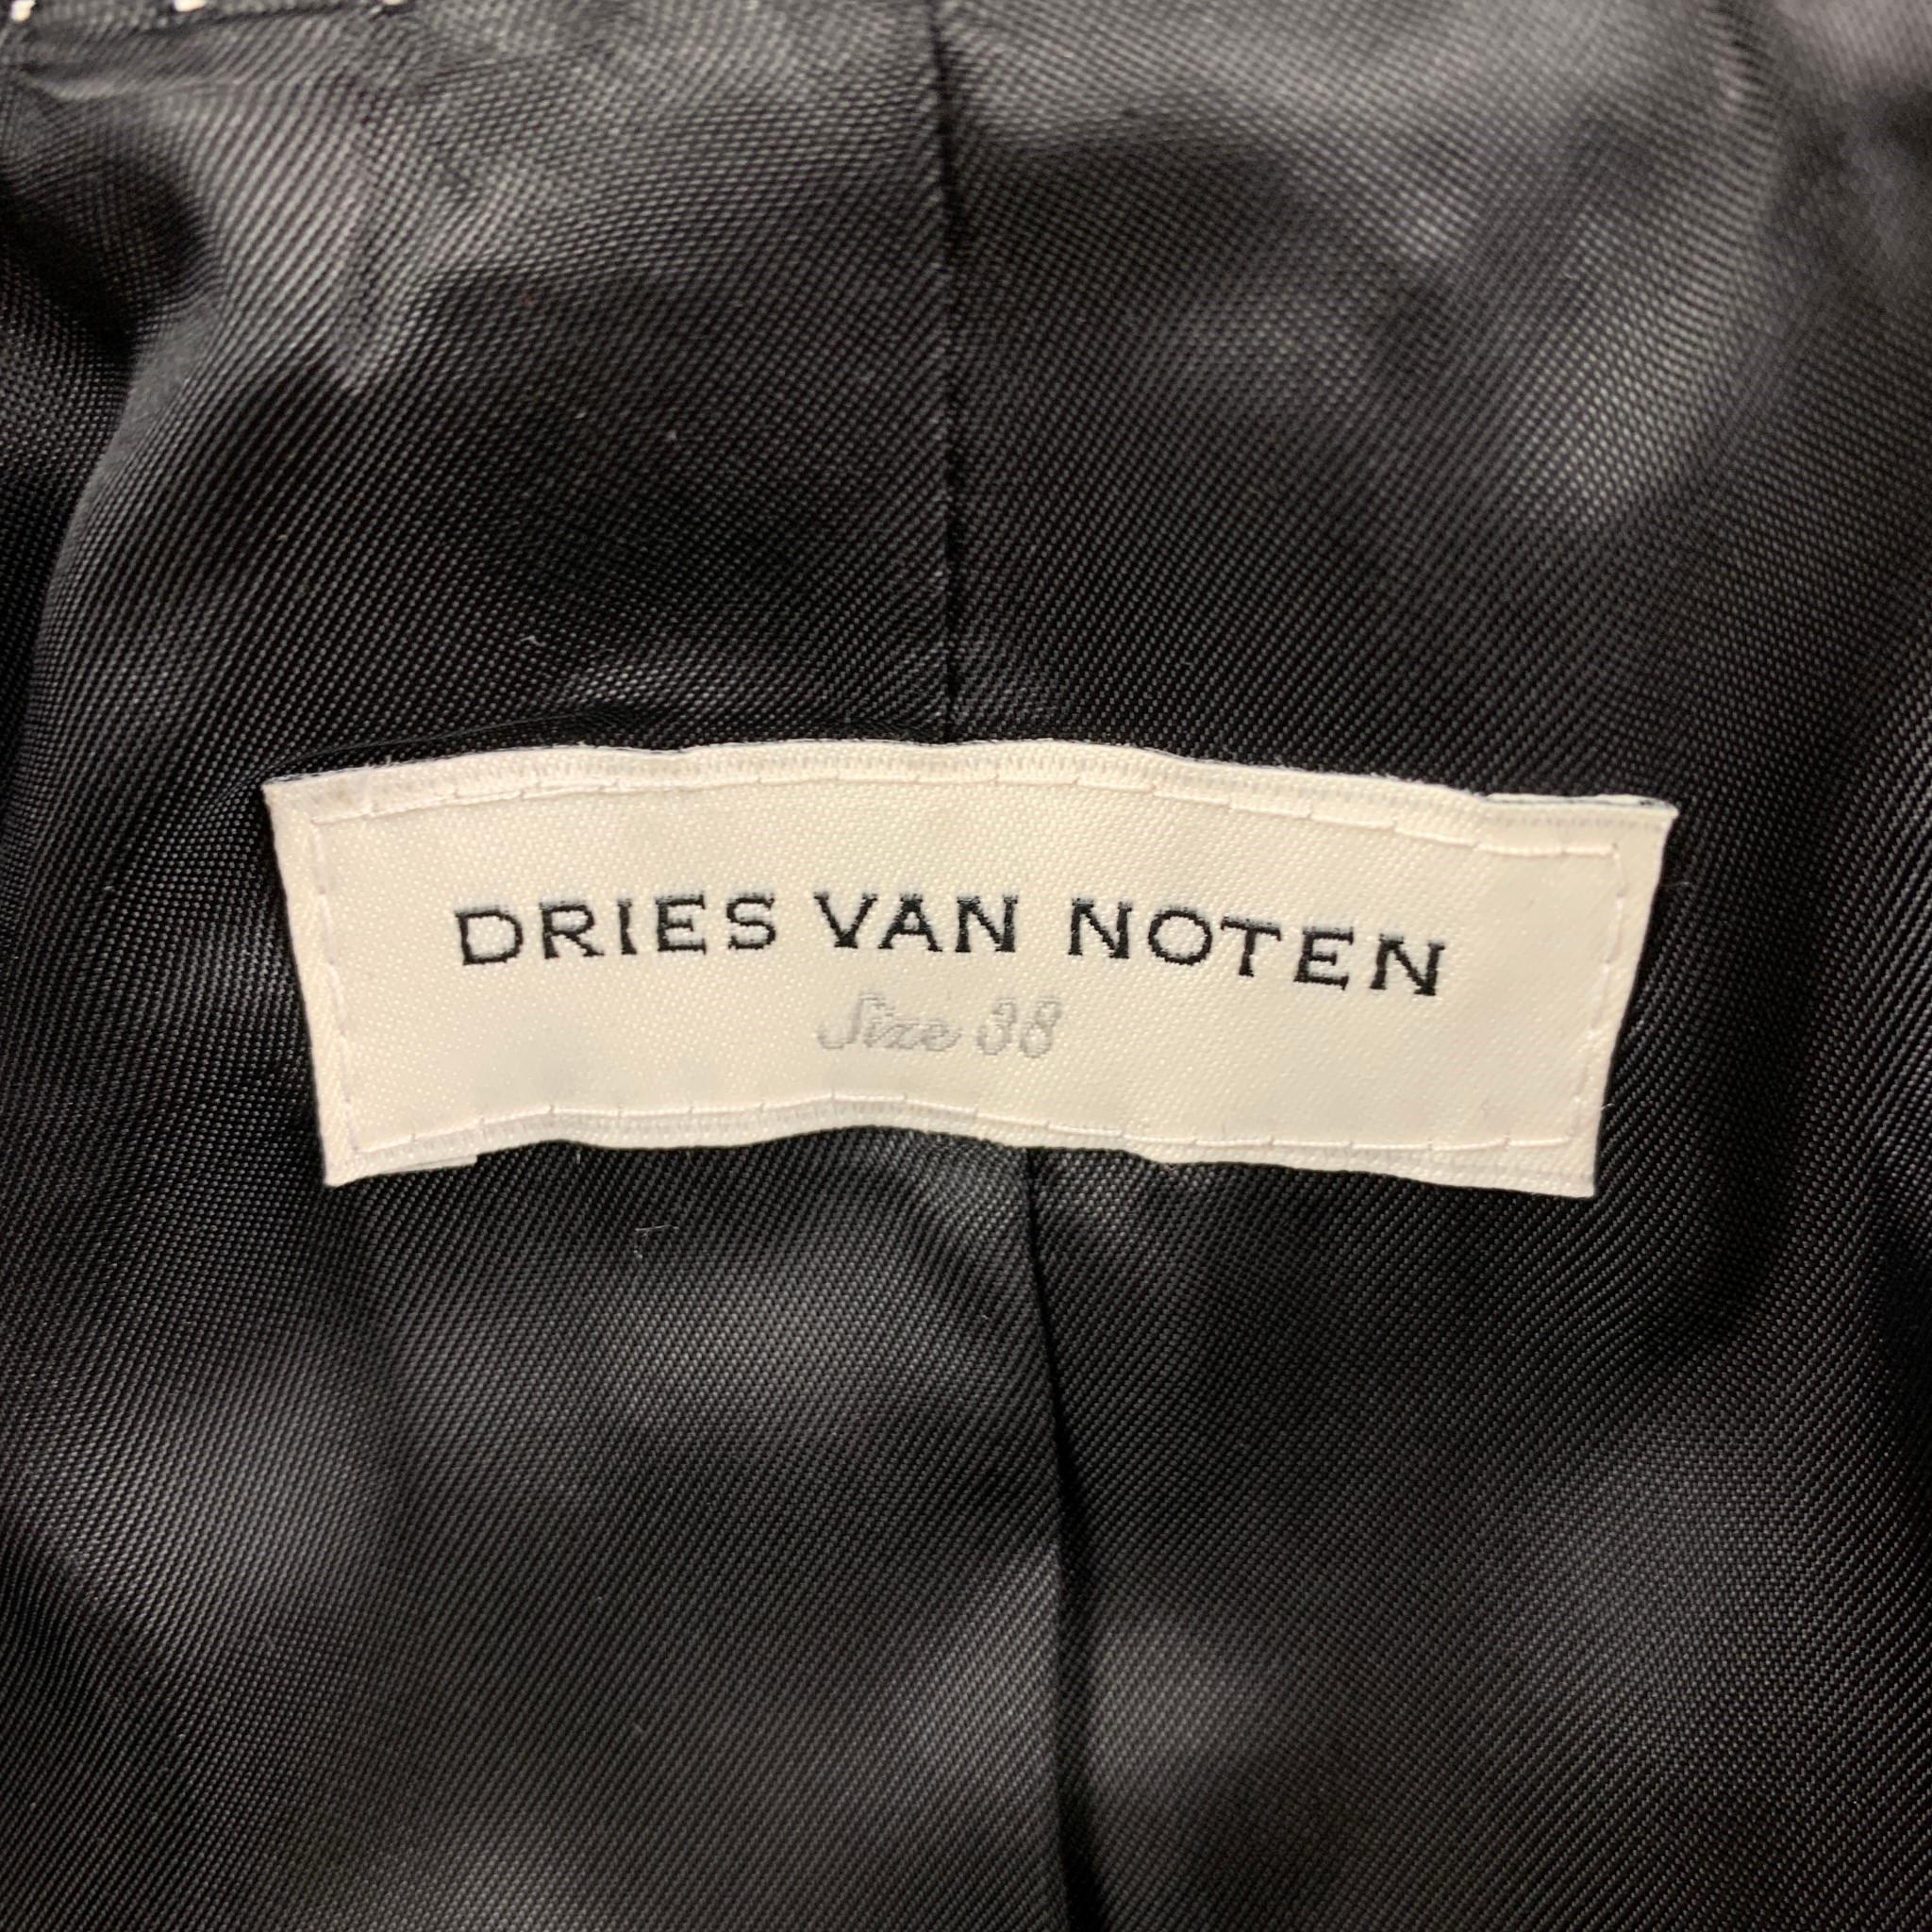 DRIES VAN NOTEN Size 6 Black Silver Beaded Sequin Cotton Jacket Blazer 2